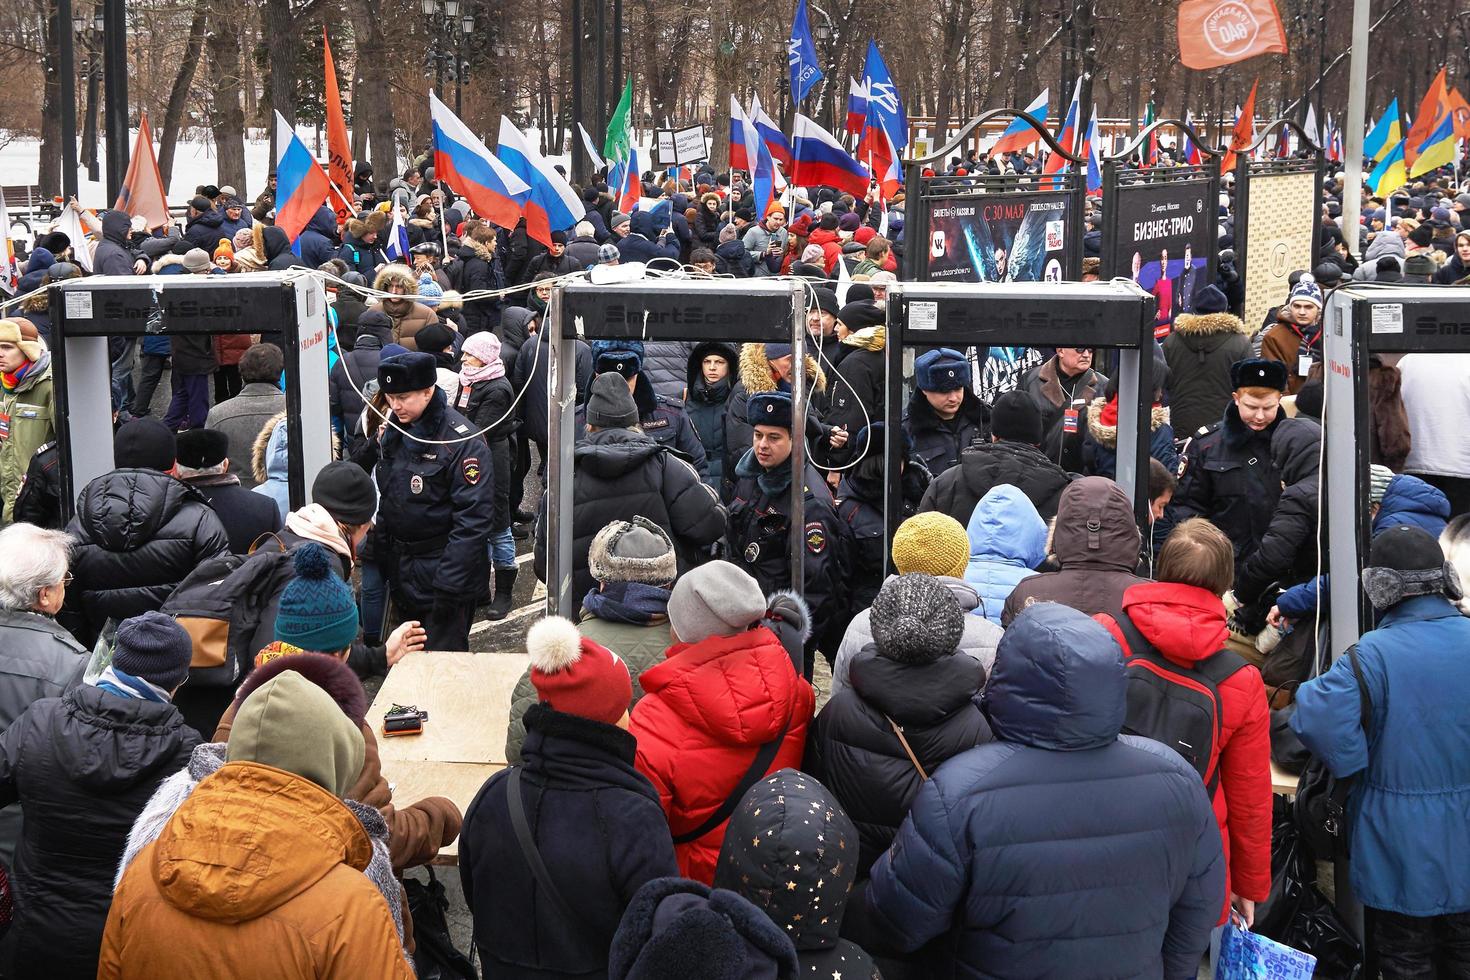 moskau, russland - 24. februar 2019. menschen passieren metalldetektoren und polizeiinspektion im moskauer nemtsov marsch. foto